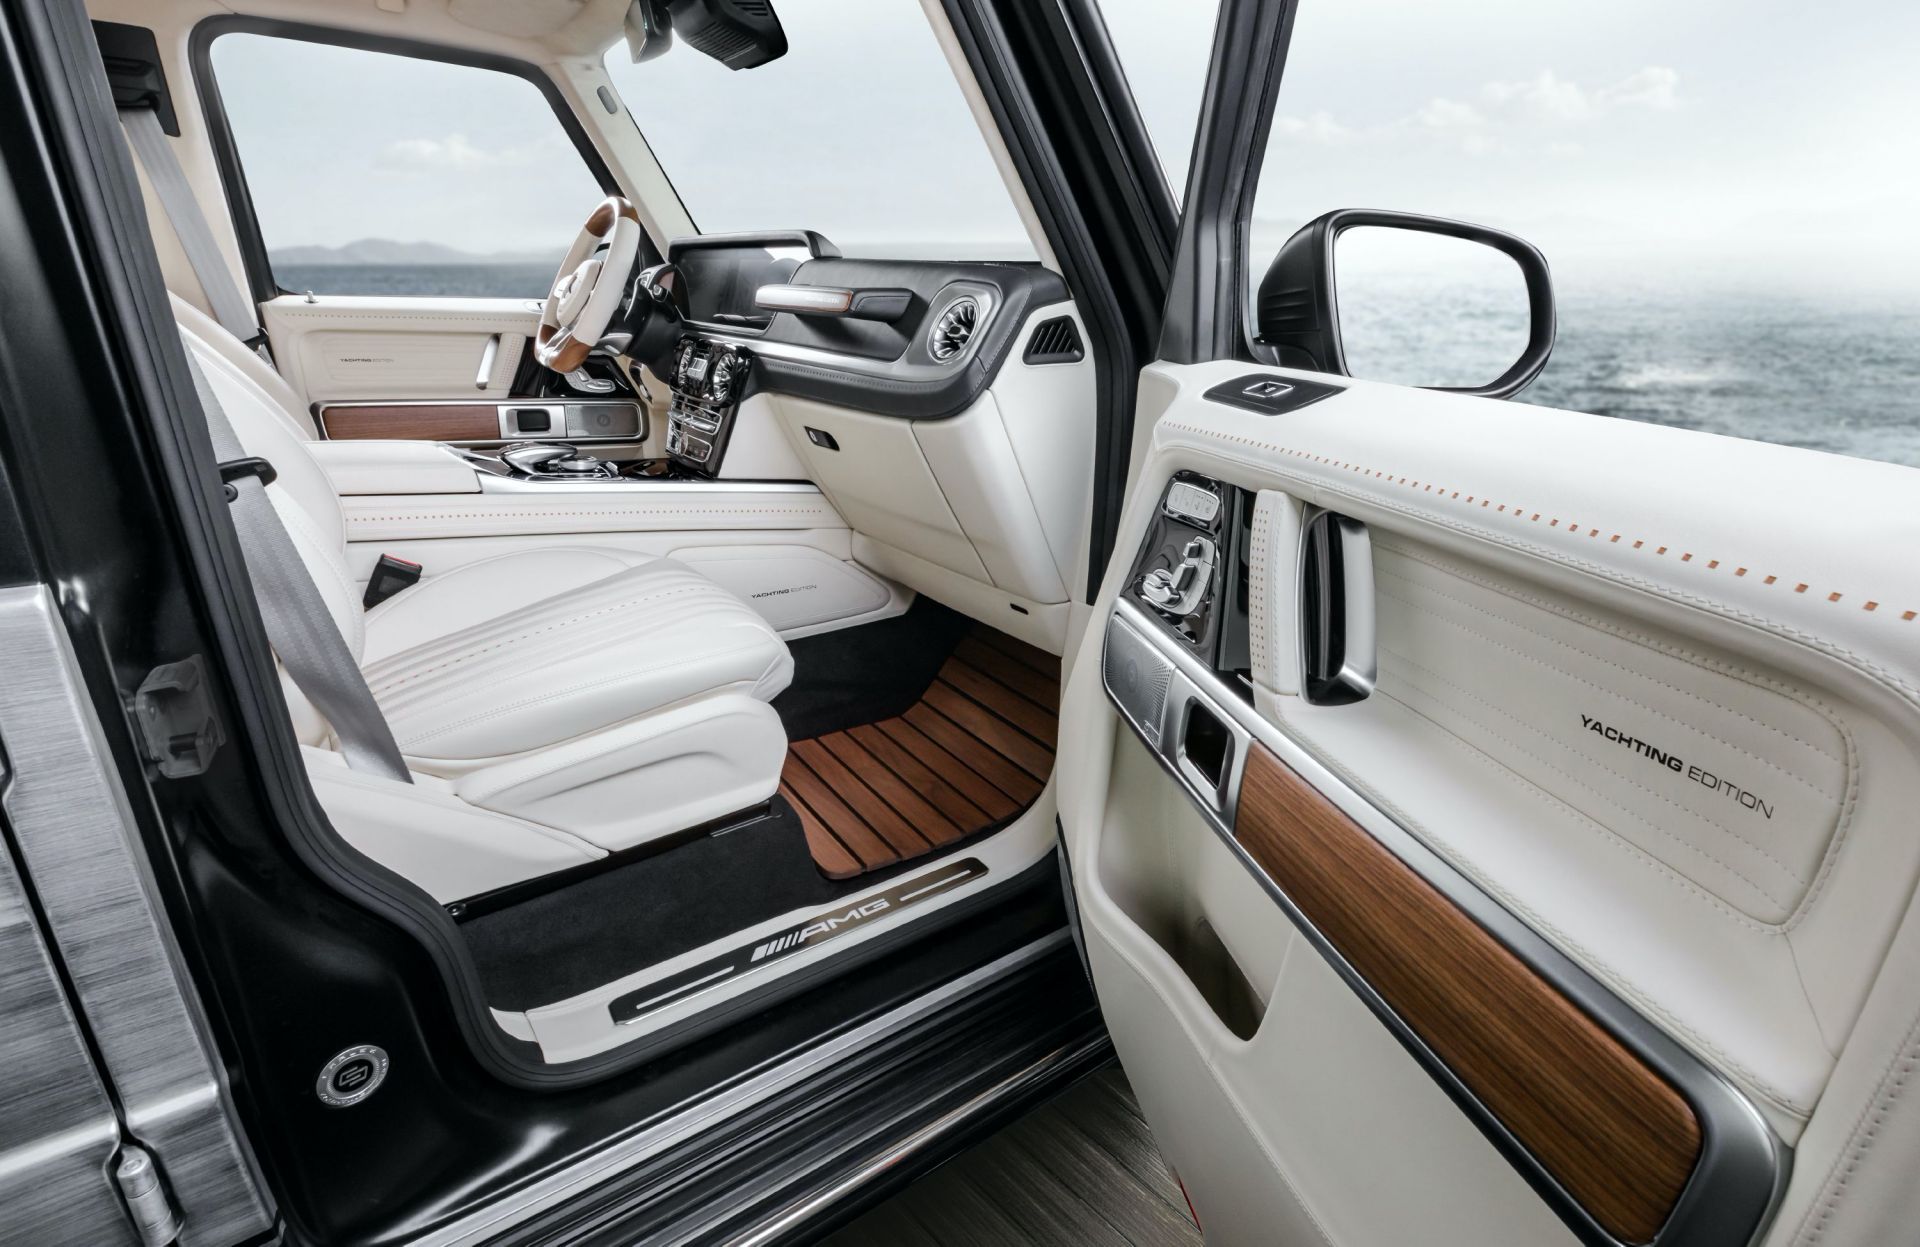 2020 Mercedes-AMG G63 Yachting Edition by Carlex Design